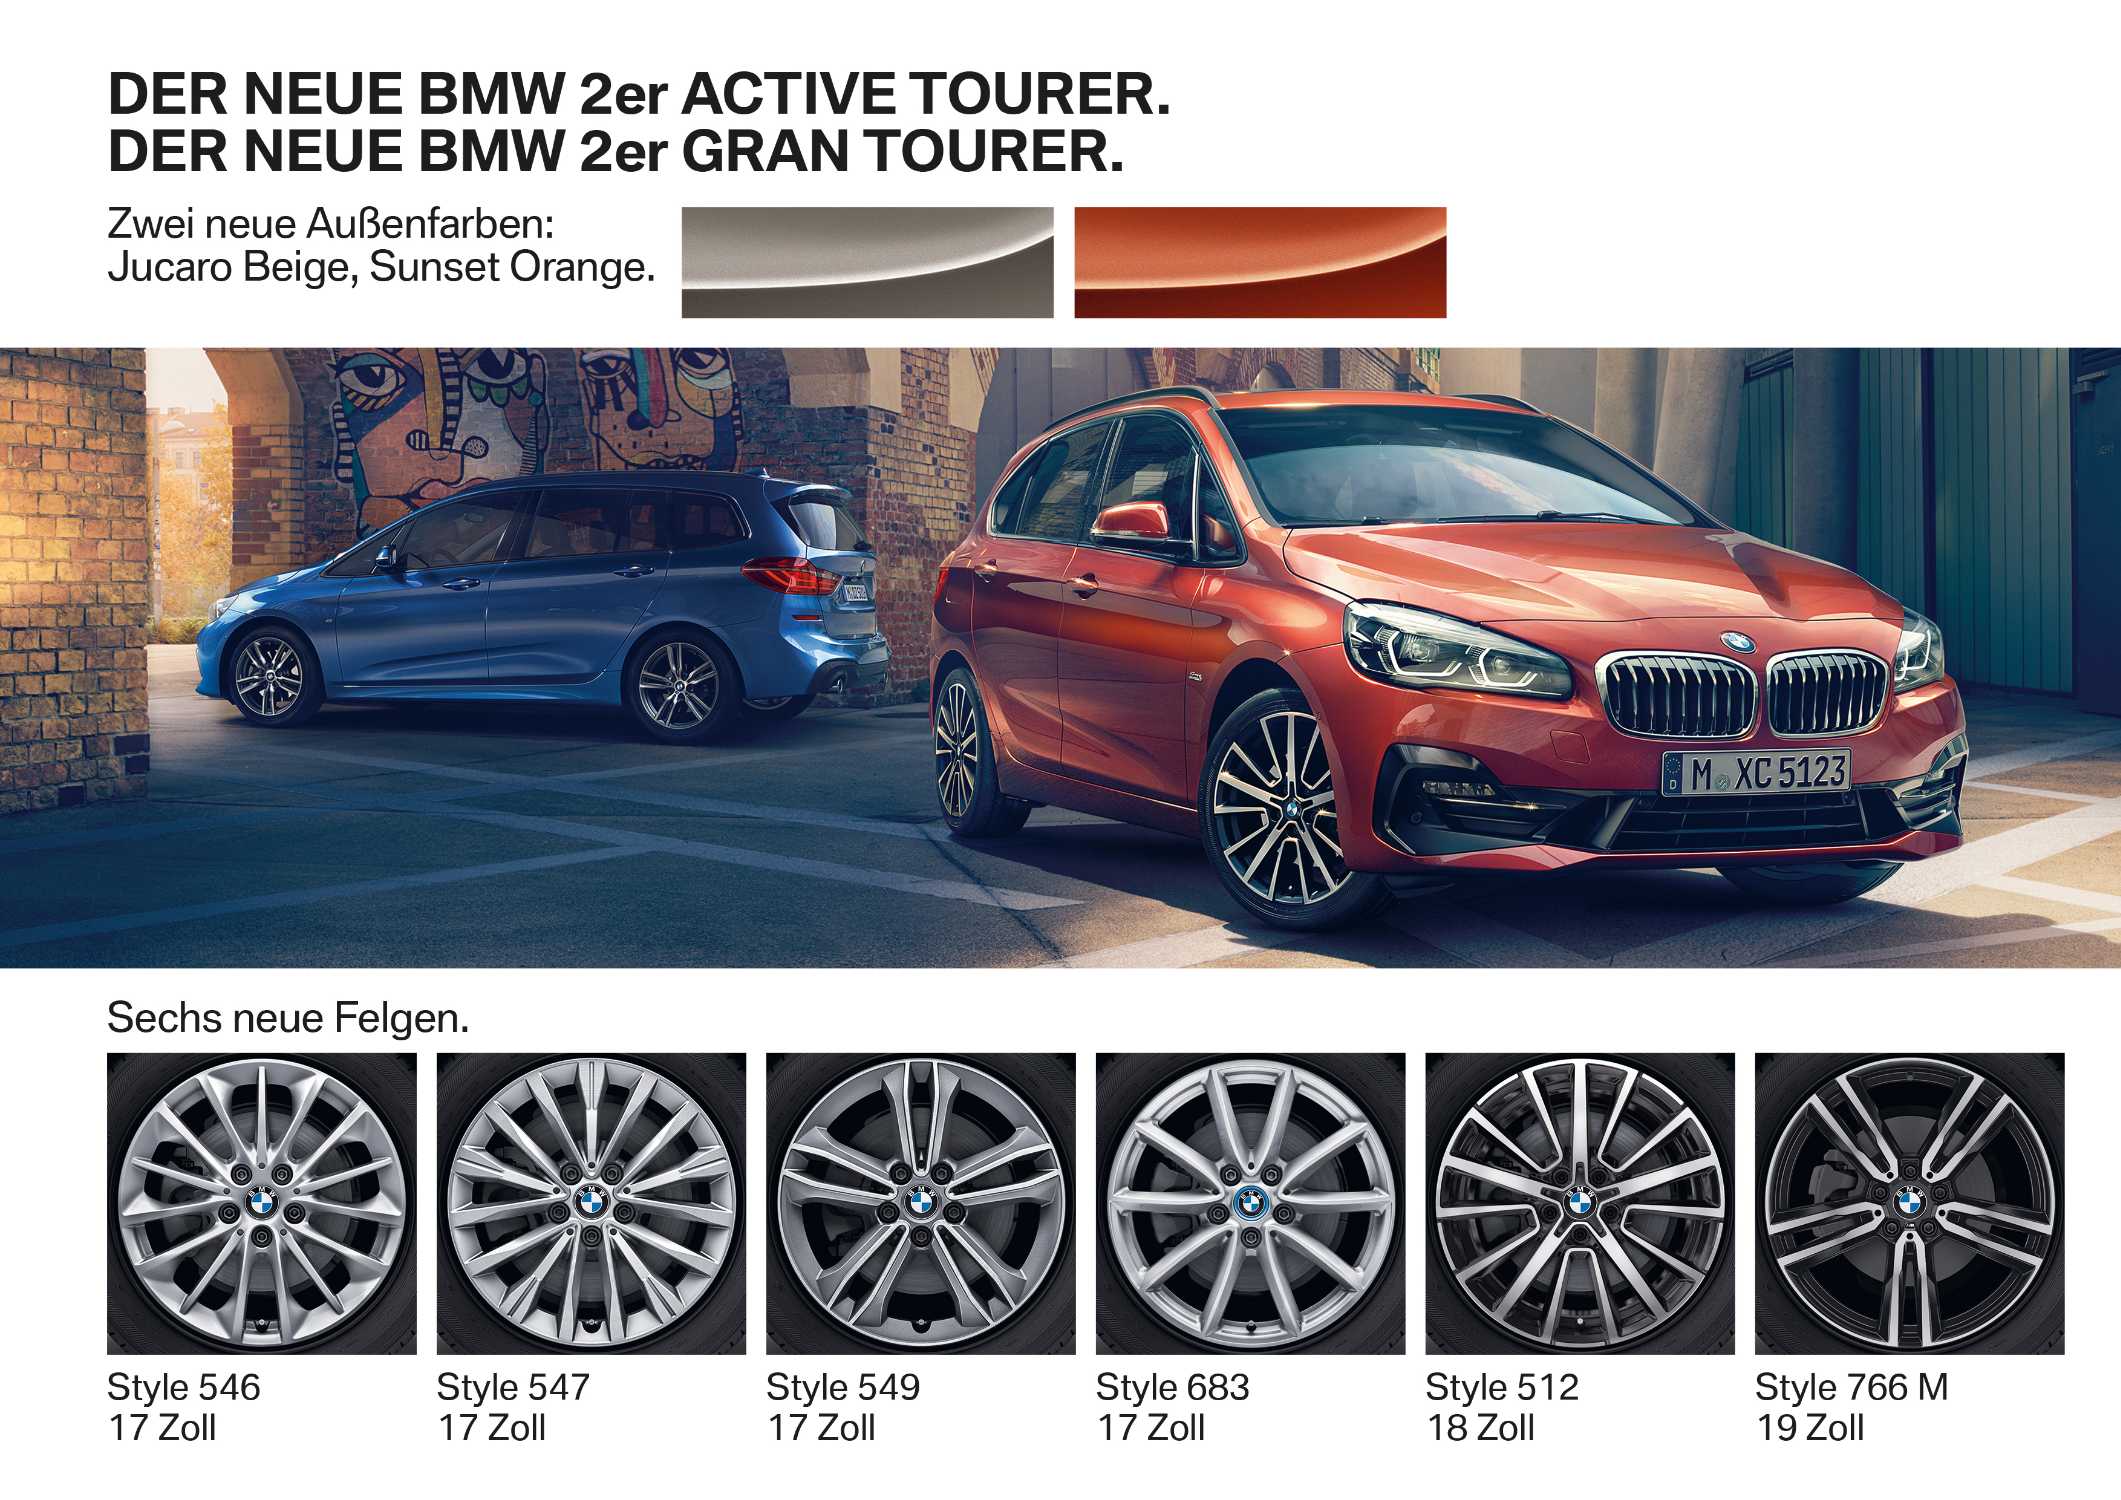 Der neue BMW 2er Active Tourer. Der neue BMW 2er Gran Tourer (01/2018).